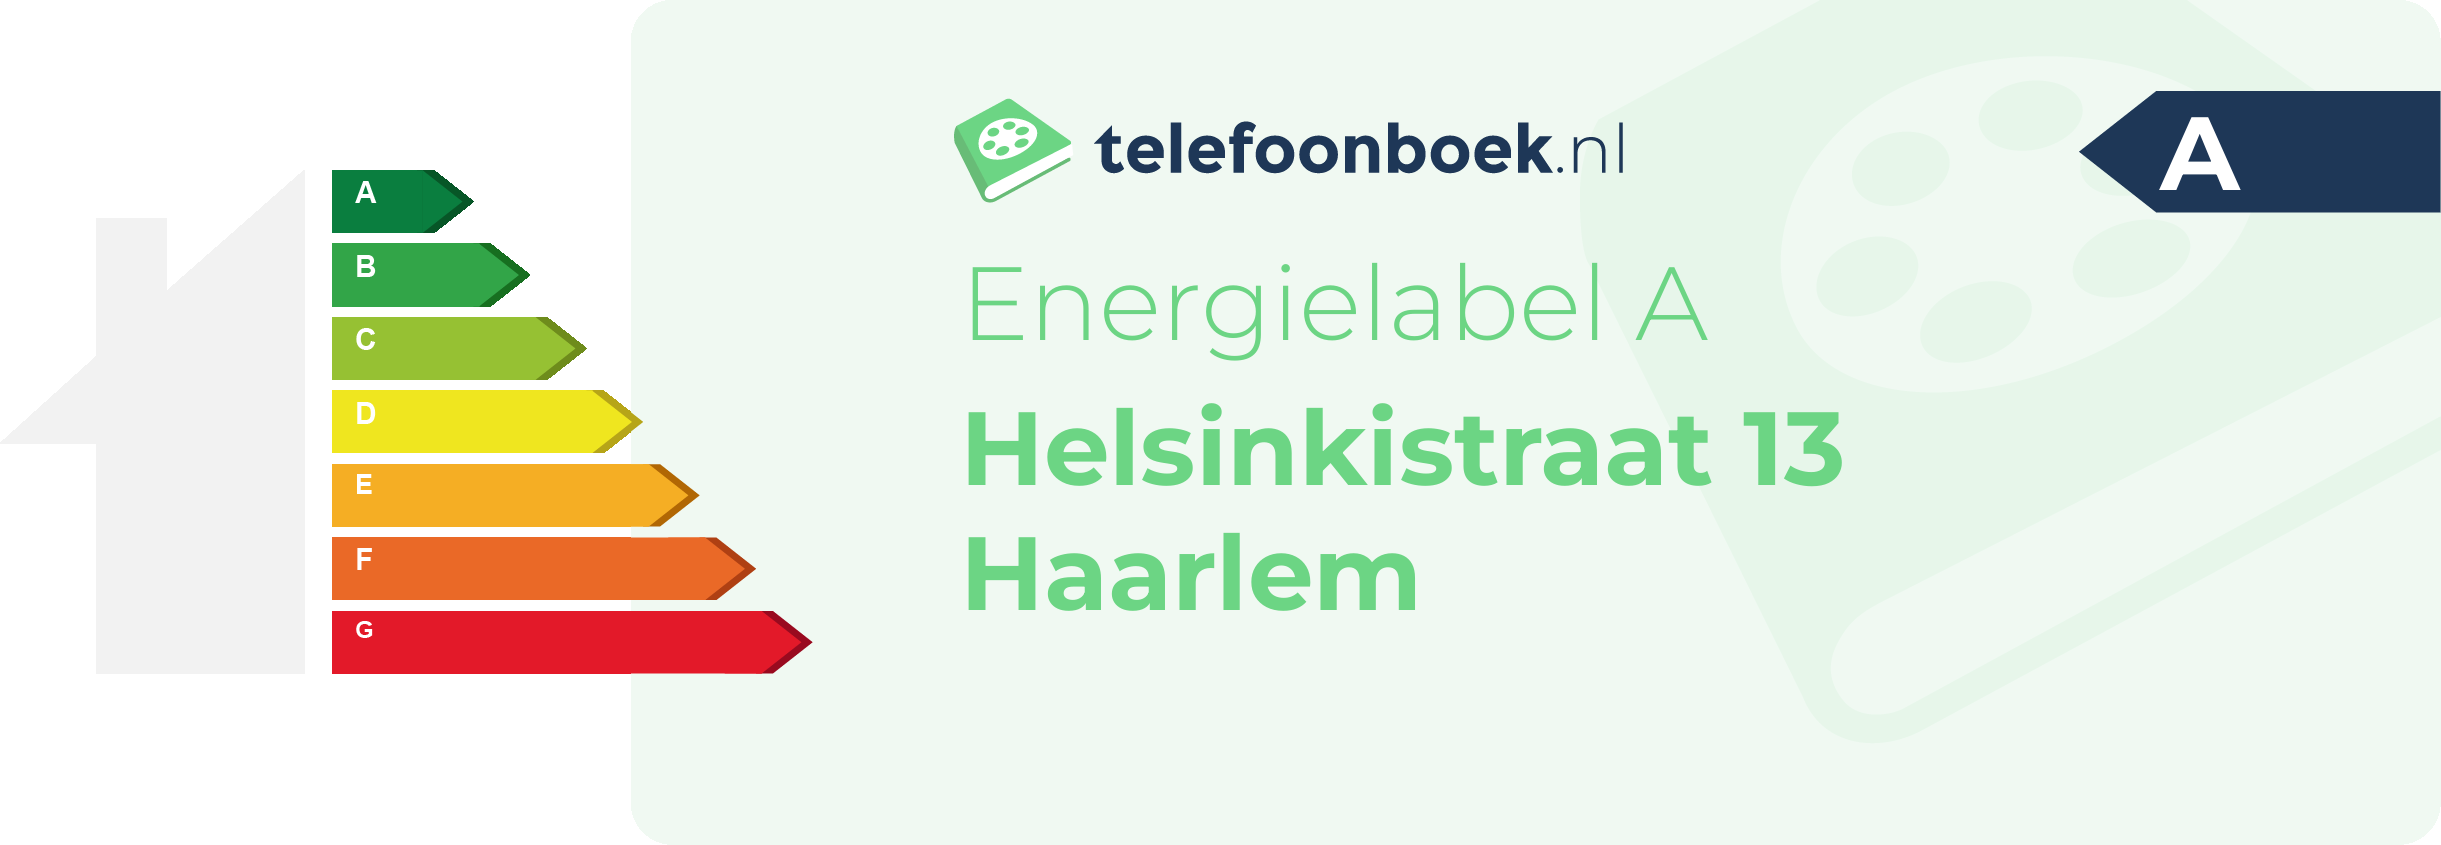 Energielabel Helsinkistraat 13 Haarlem